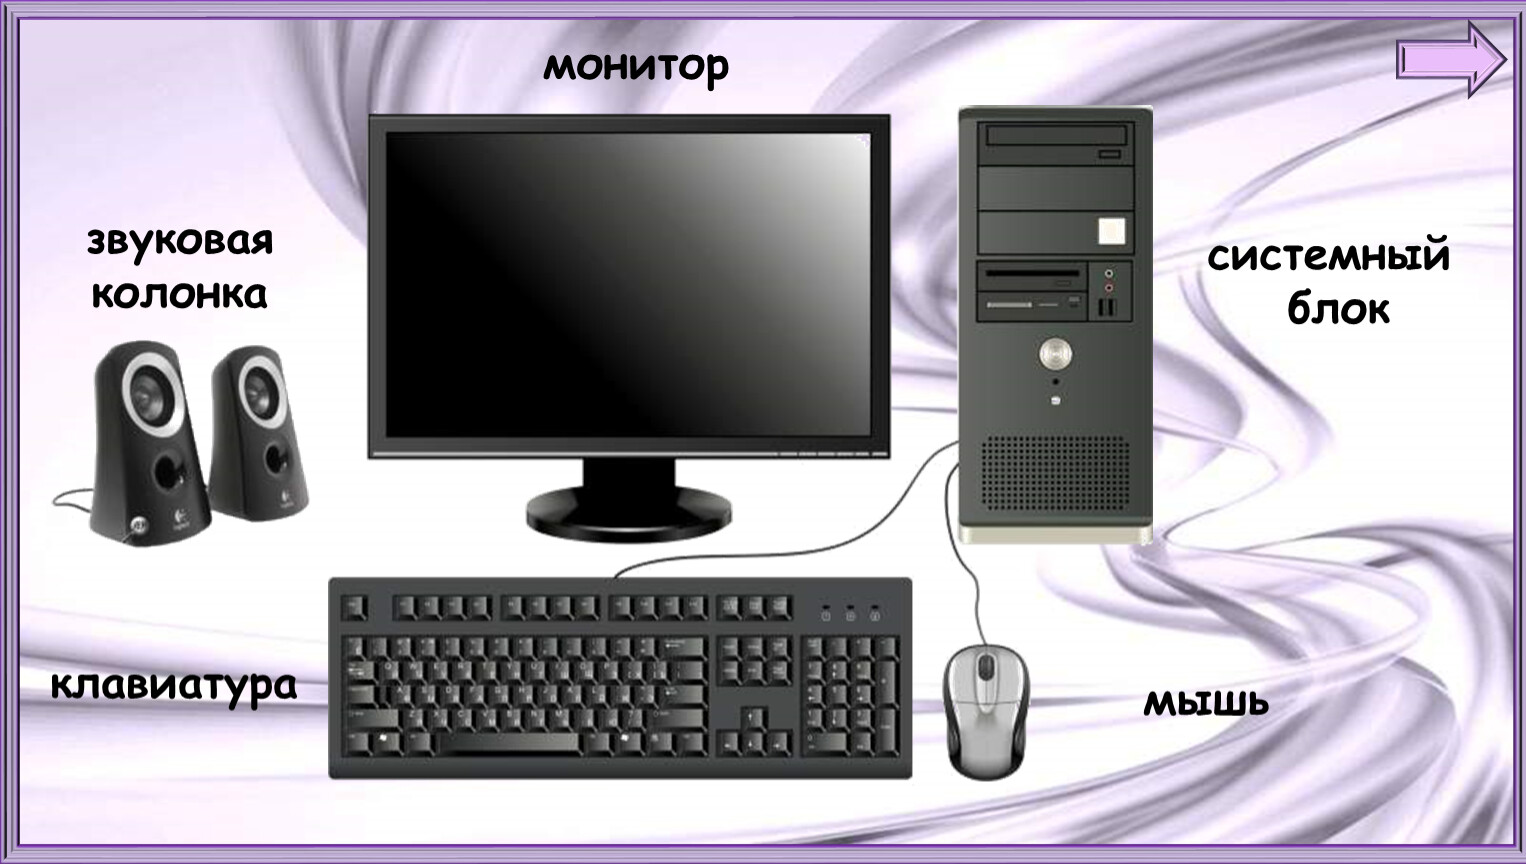 Компьютер монитор мышь клавиатура системный блок